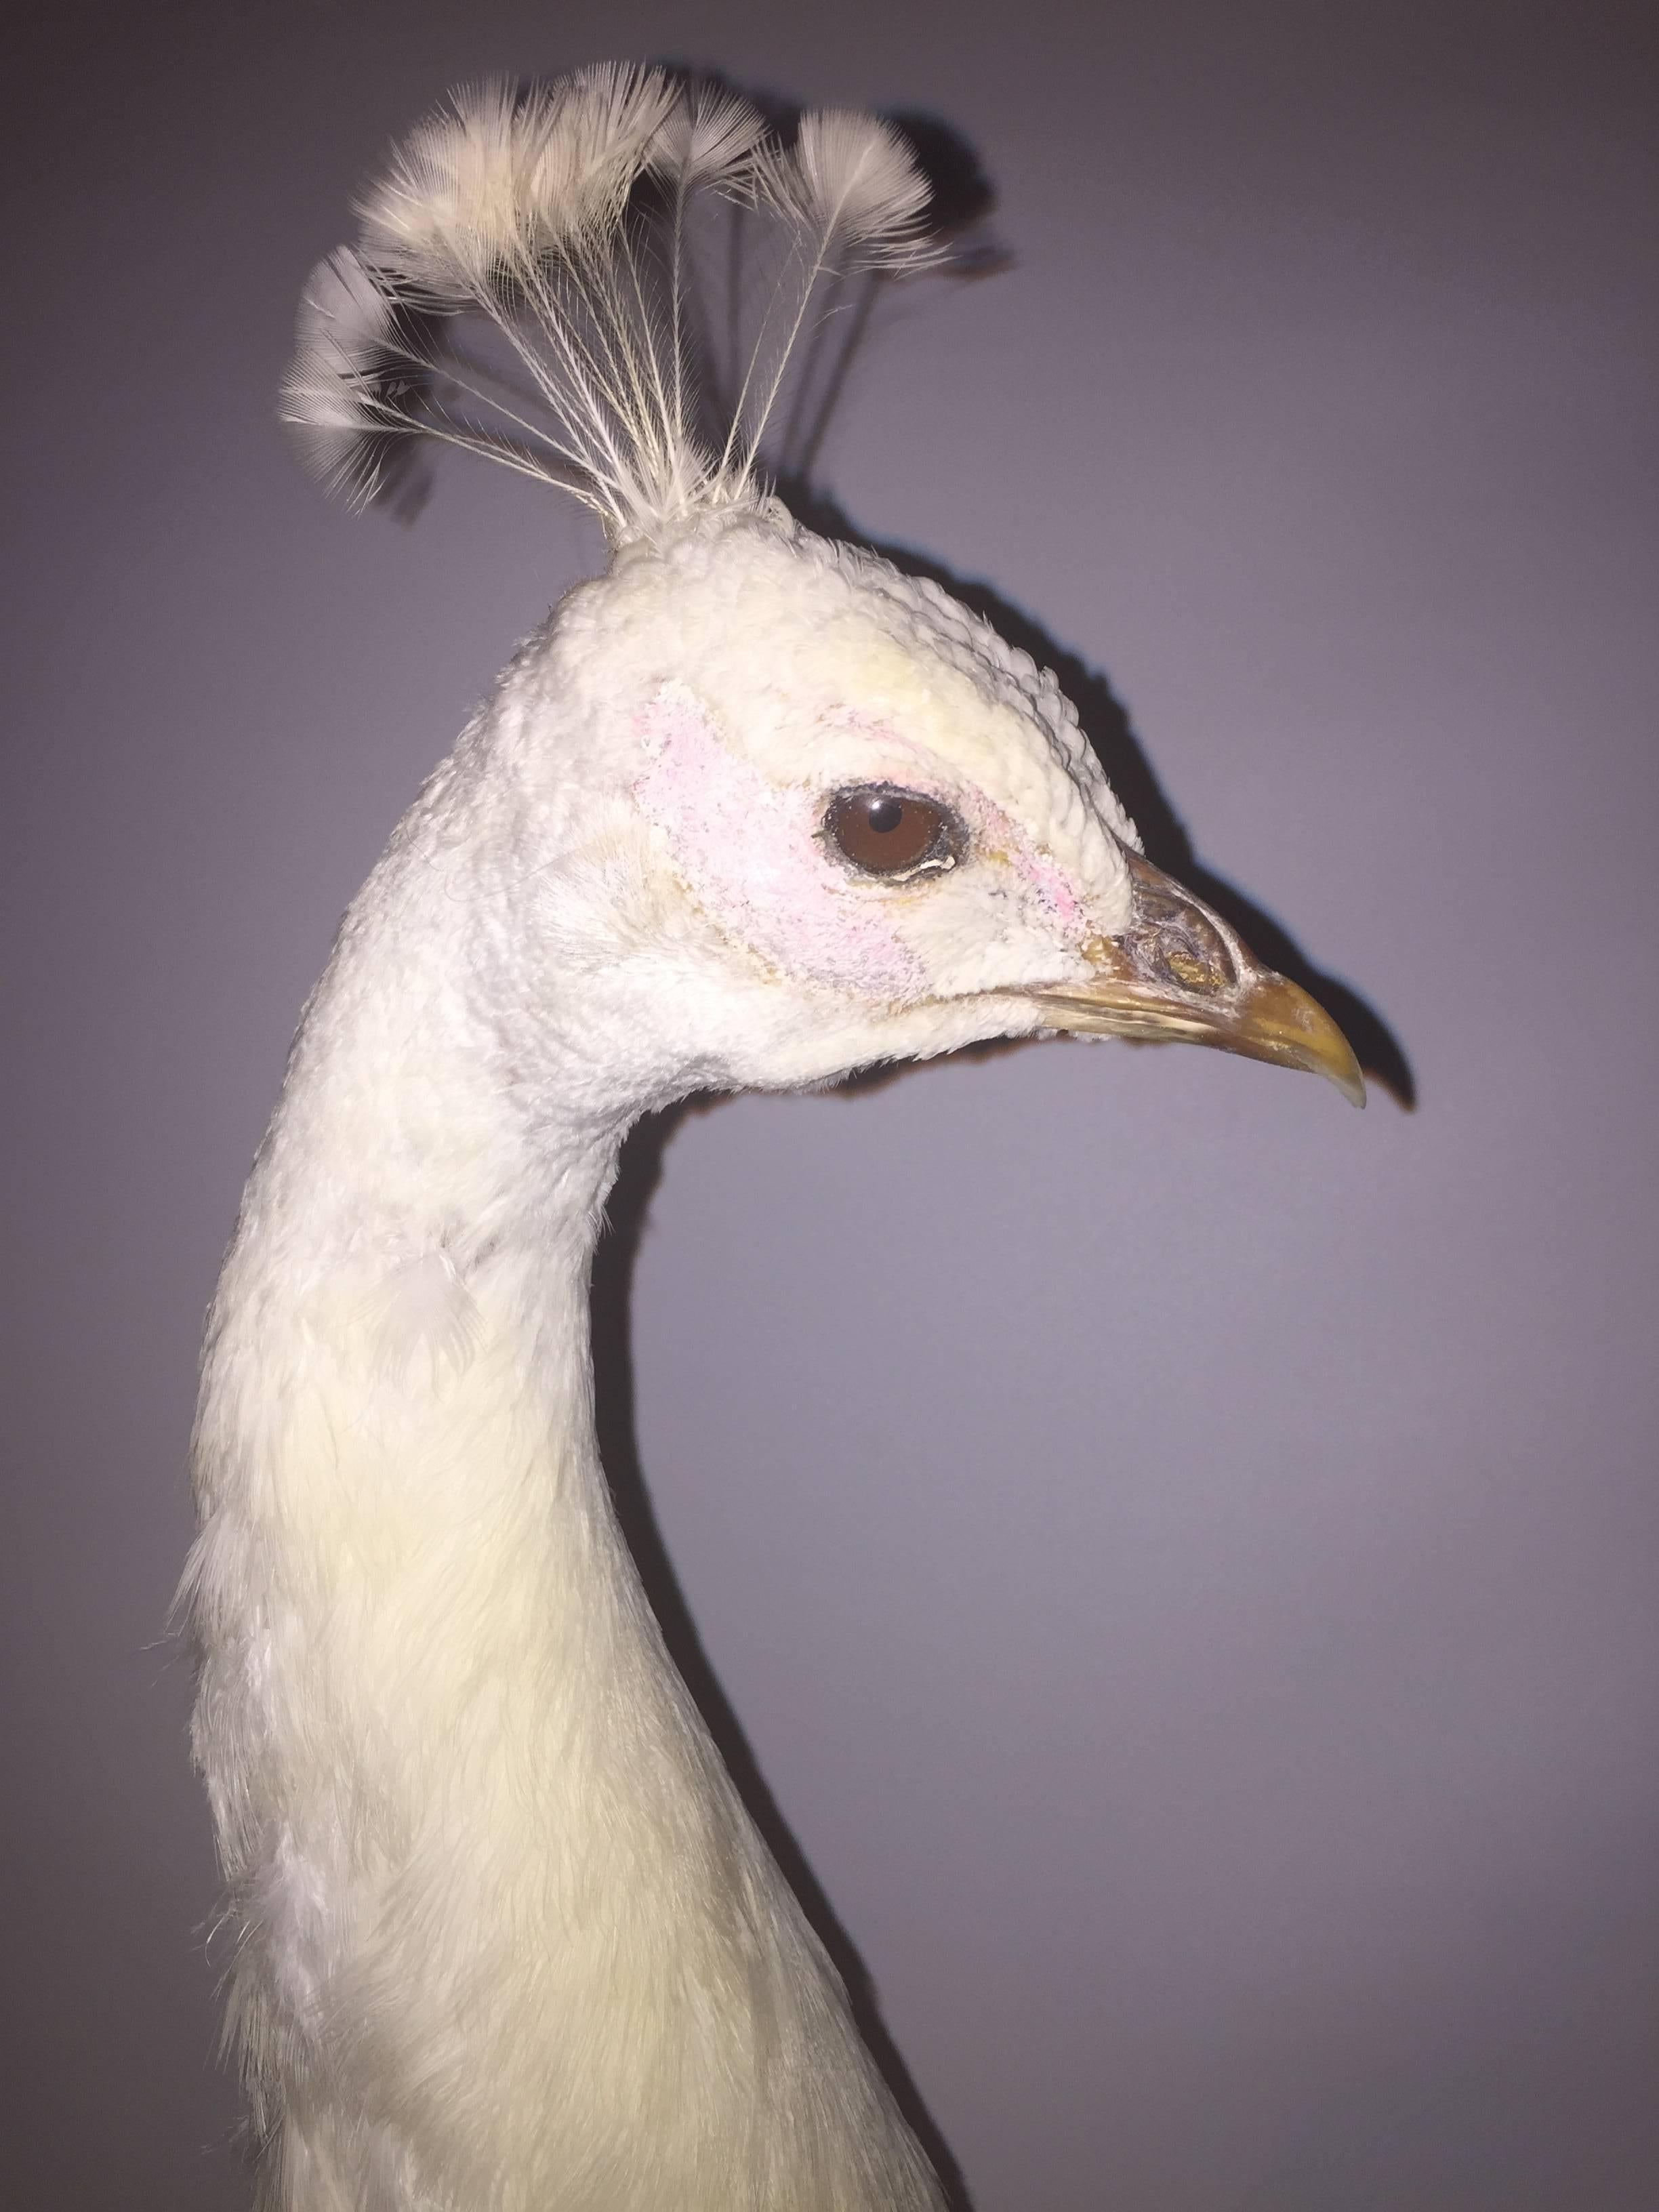 albino peacock taxidermy